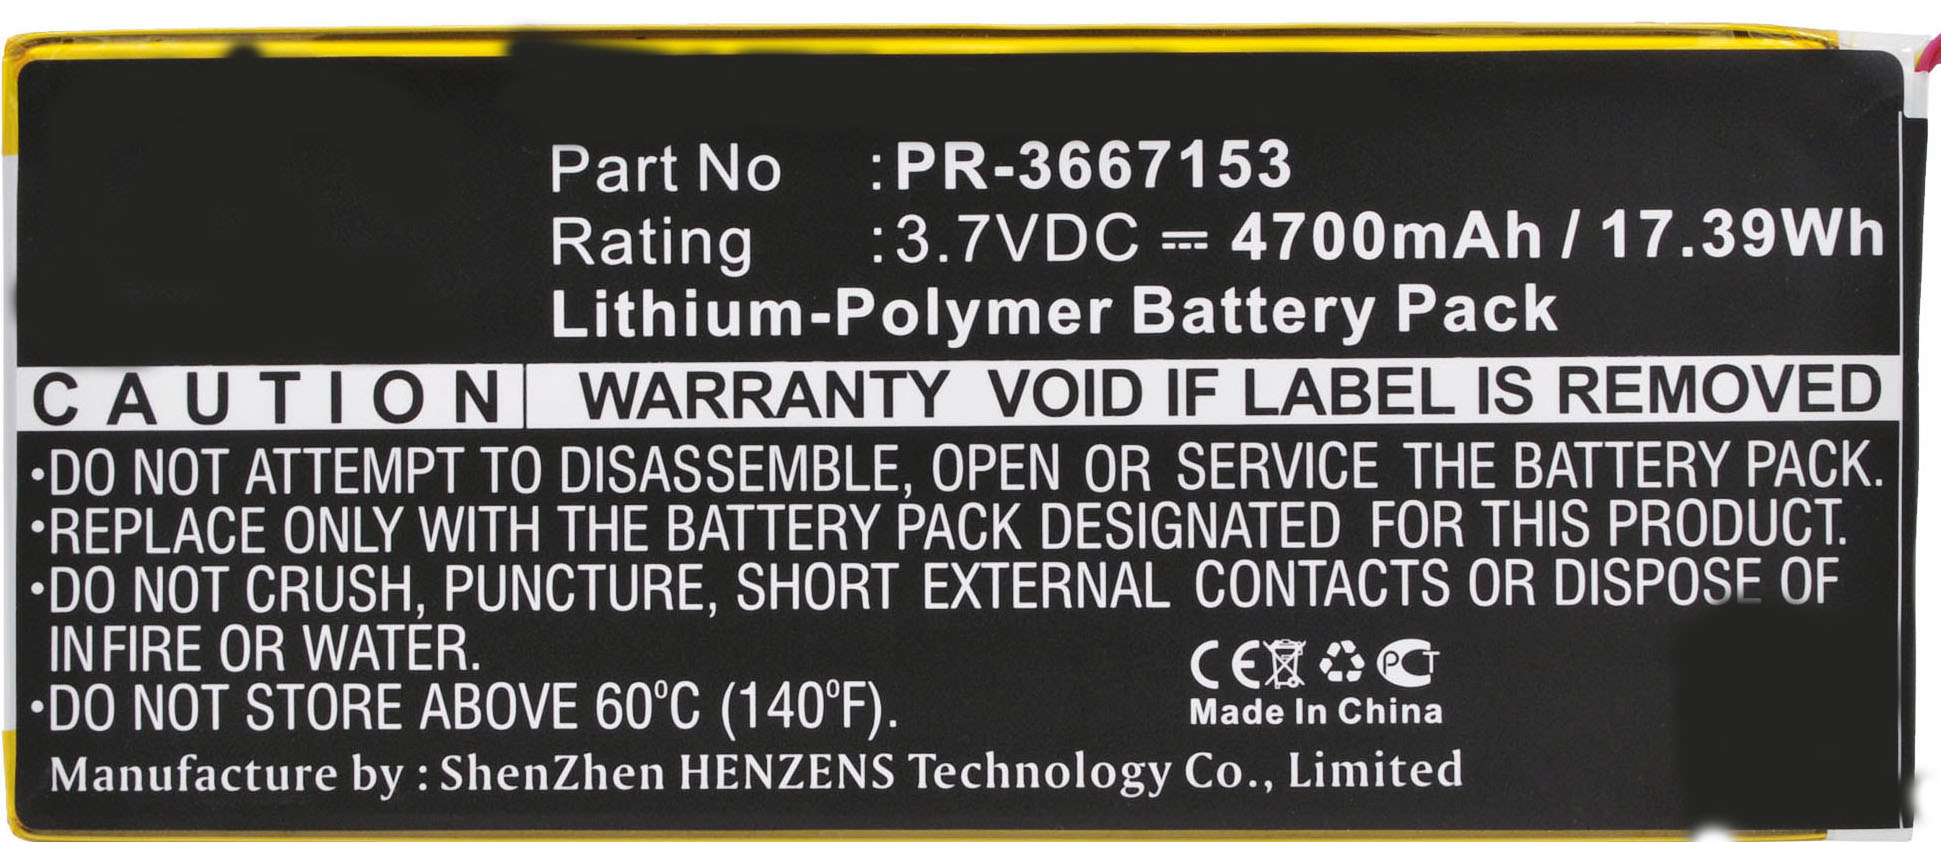 Batteries for NabiTablet